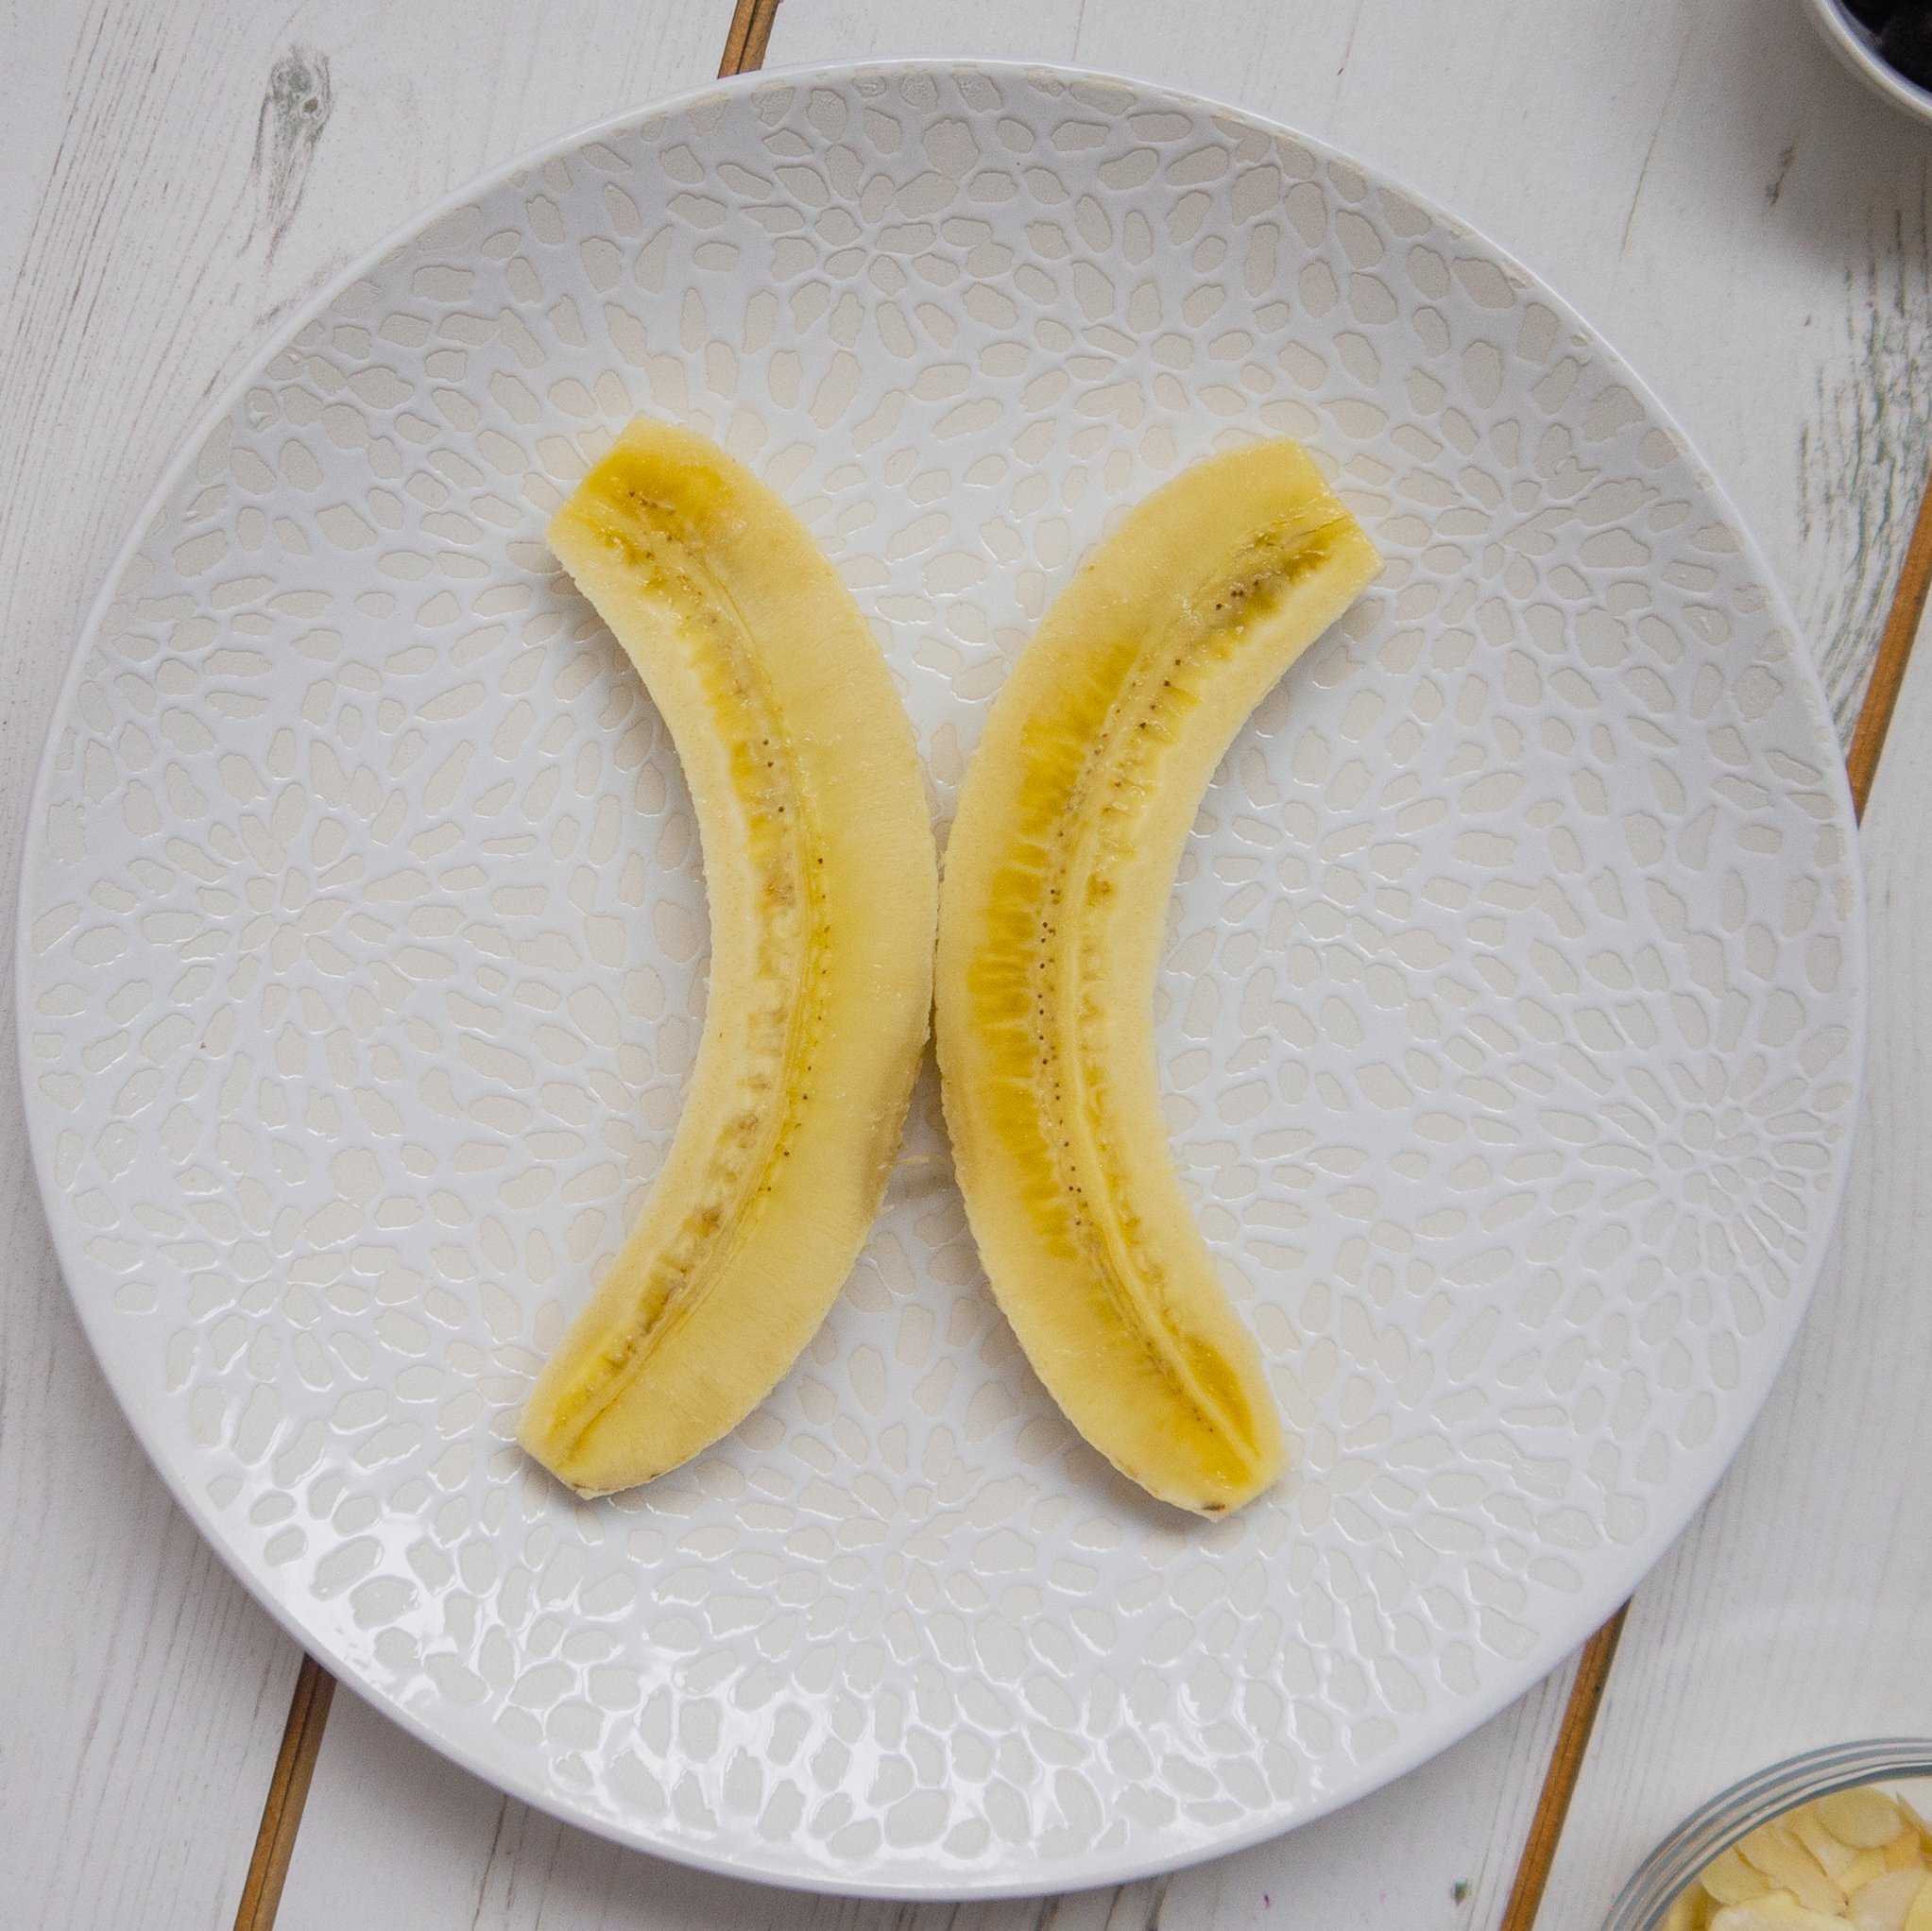 the banana split by kam sokhi allergy chef 